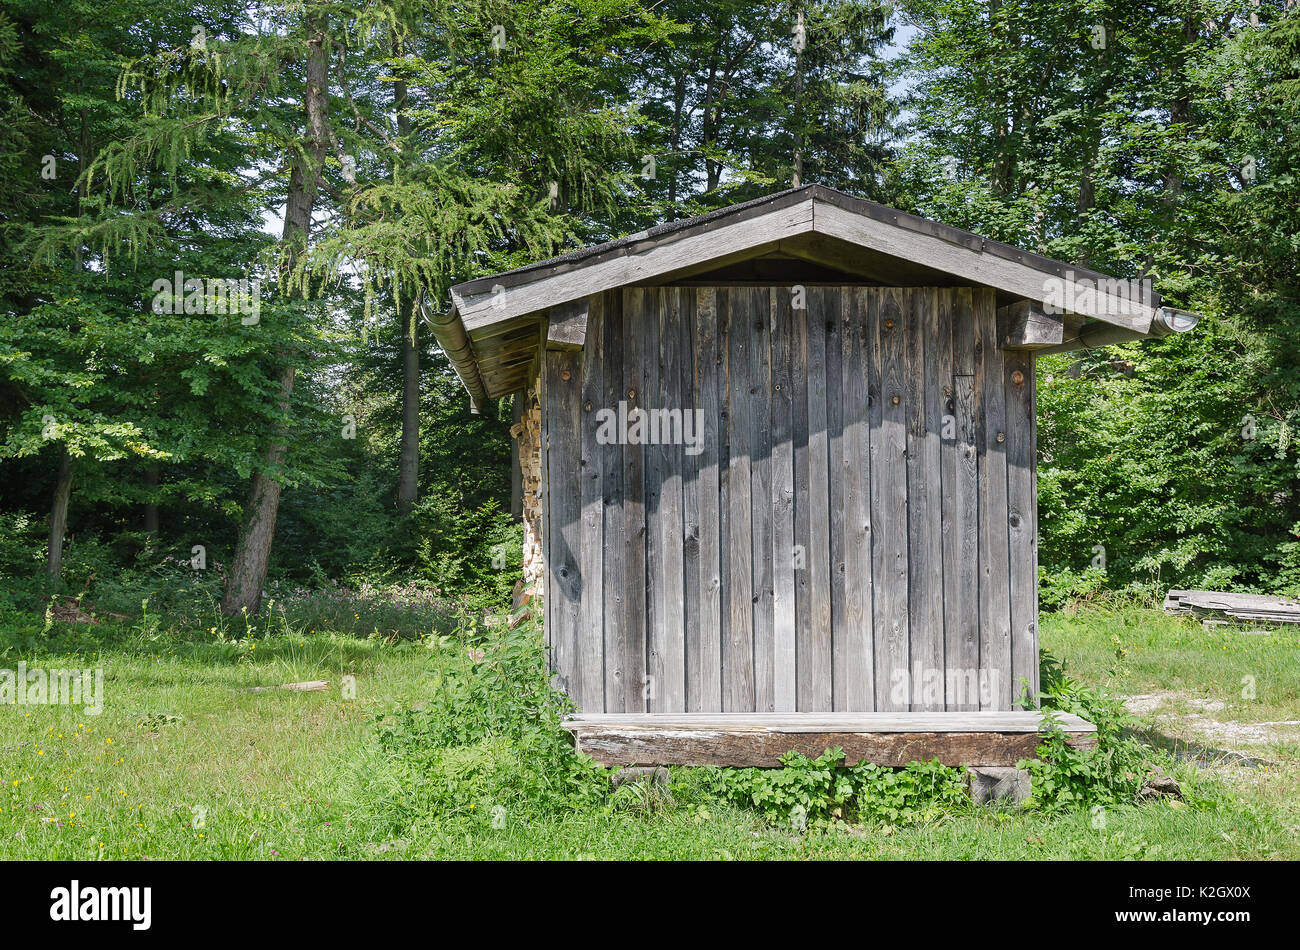 Verwitterte Holzhütte auf einer Wiese am Waldrand. Einfache überdachte Struktur verwendet gestapelten Brennholz zu lagern, um den Inhalt vor Feuchtigkeit zu schützen. Foto. Stockfoto